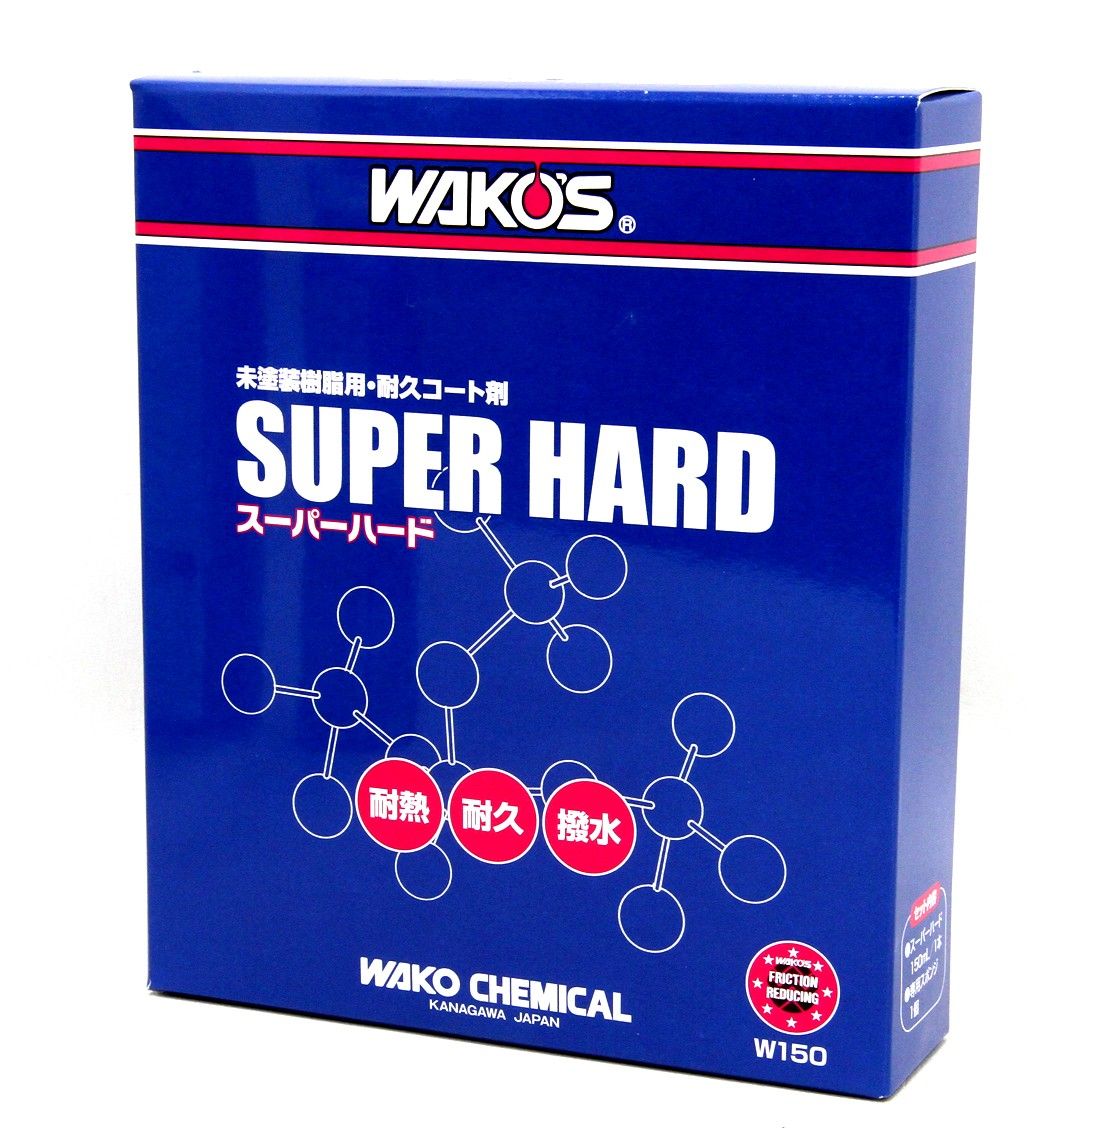 【新品・未開封】ワコーズ SH-R スーパーハード 未塗装樹脂用耐久コート剤 W150